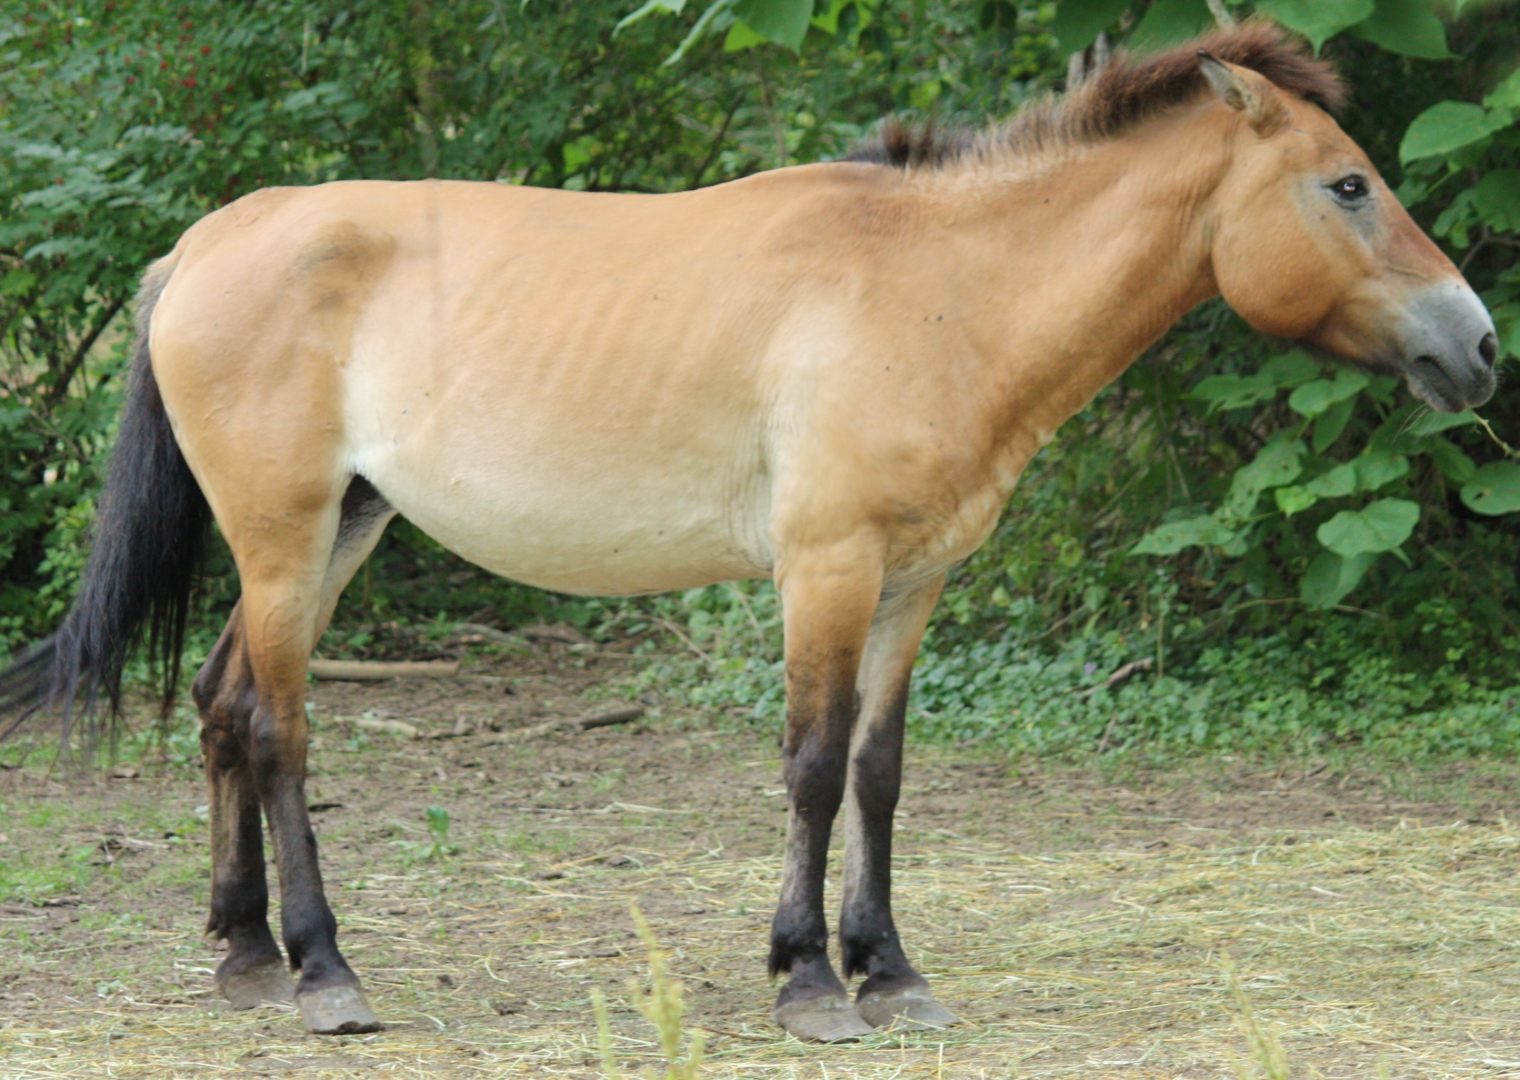 Perfil del caballo de Przewalski